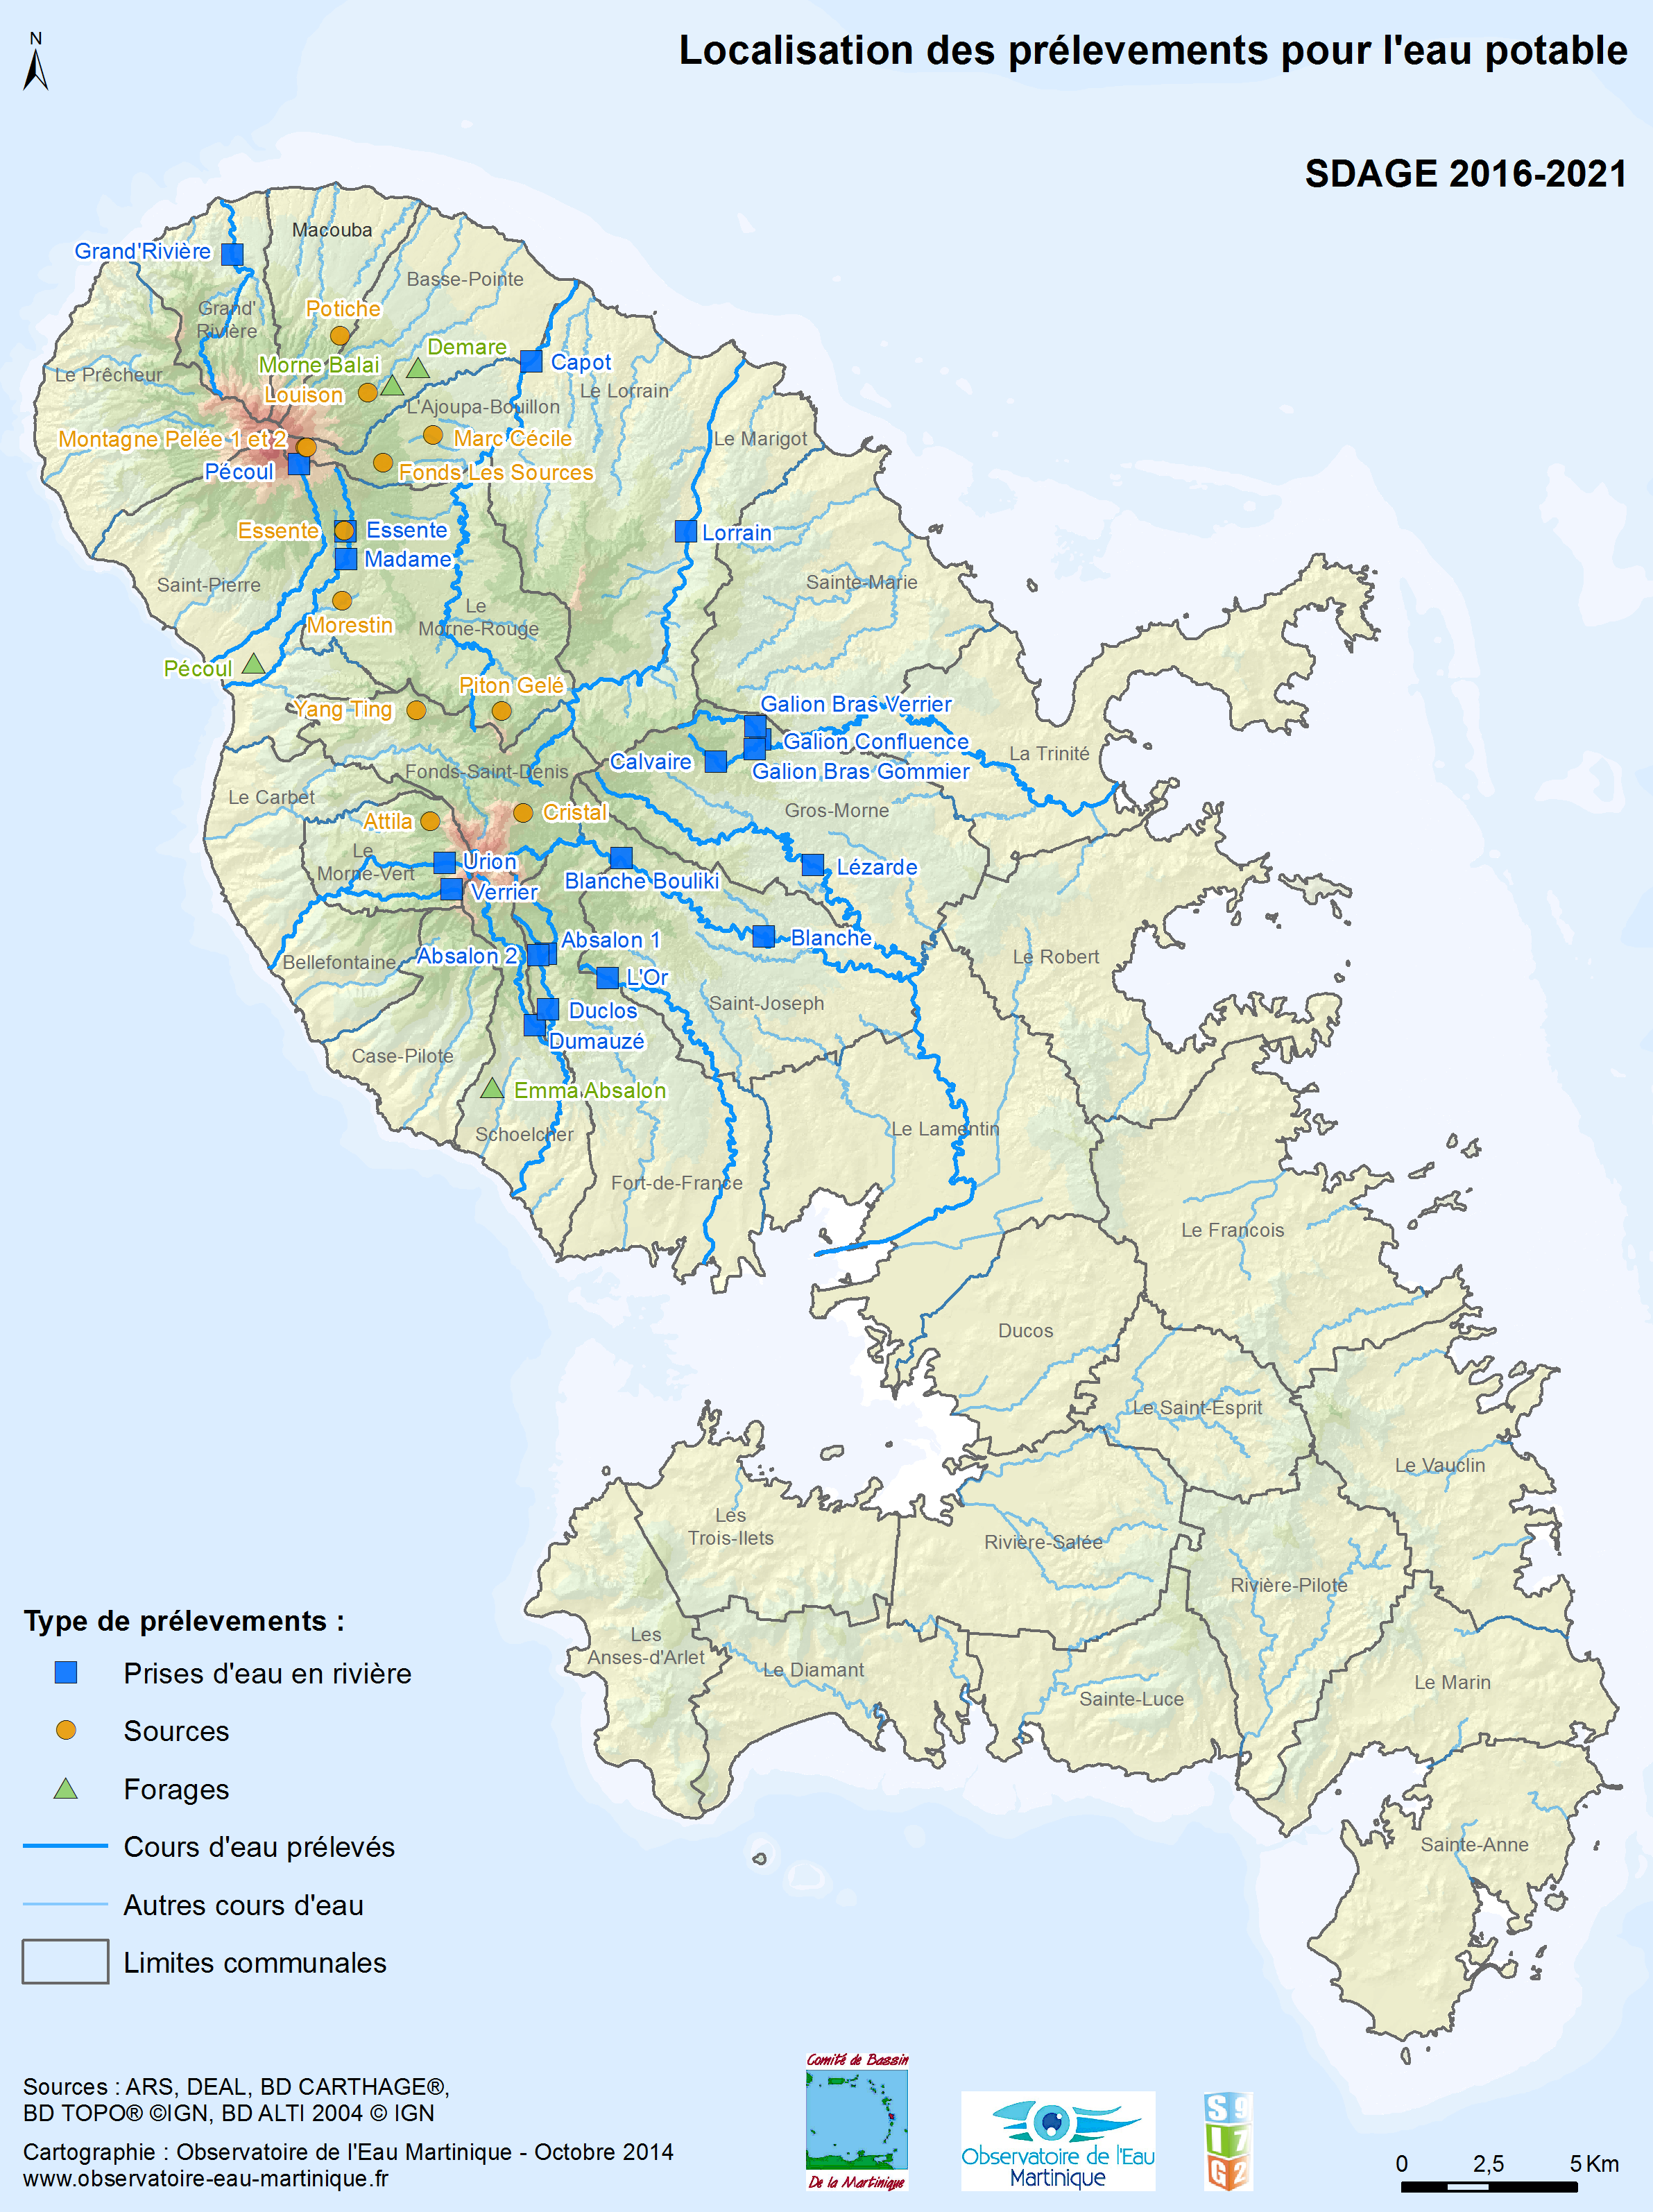 SDAGE 2016-2021 - Localisation des prélèvements pour l'eau potable